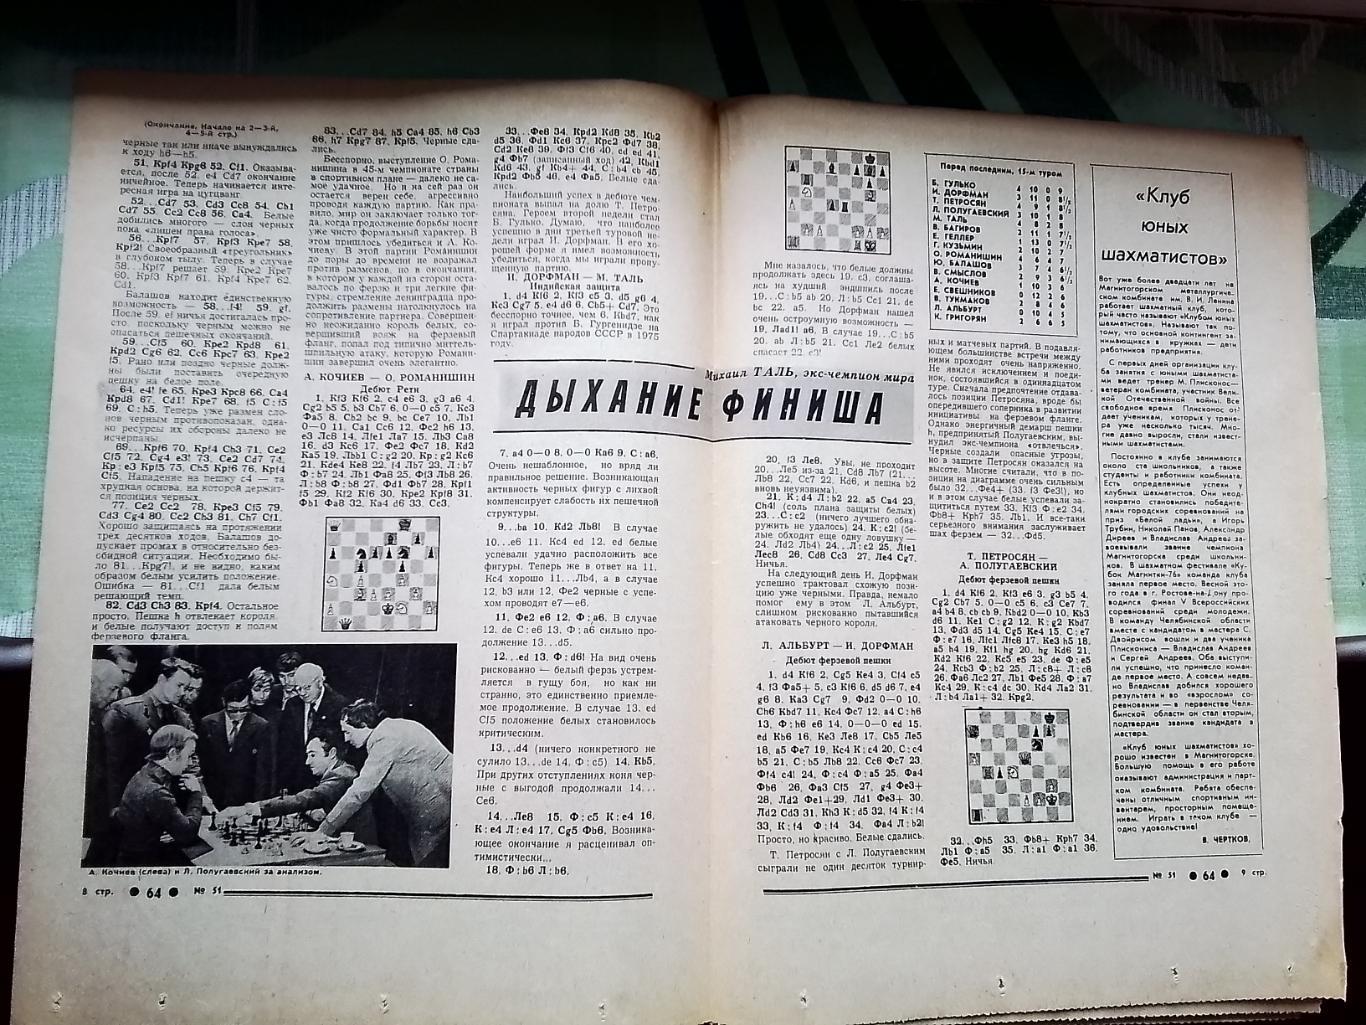 Приложение 64 Шахматы Советский спорт N 51 (494) 22-28.12. 1977 1